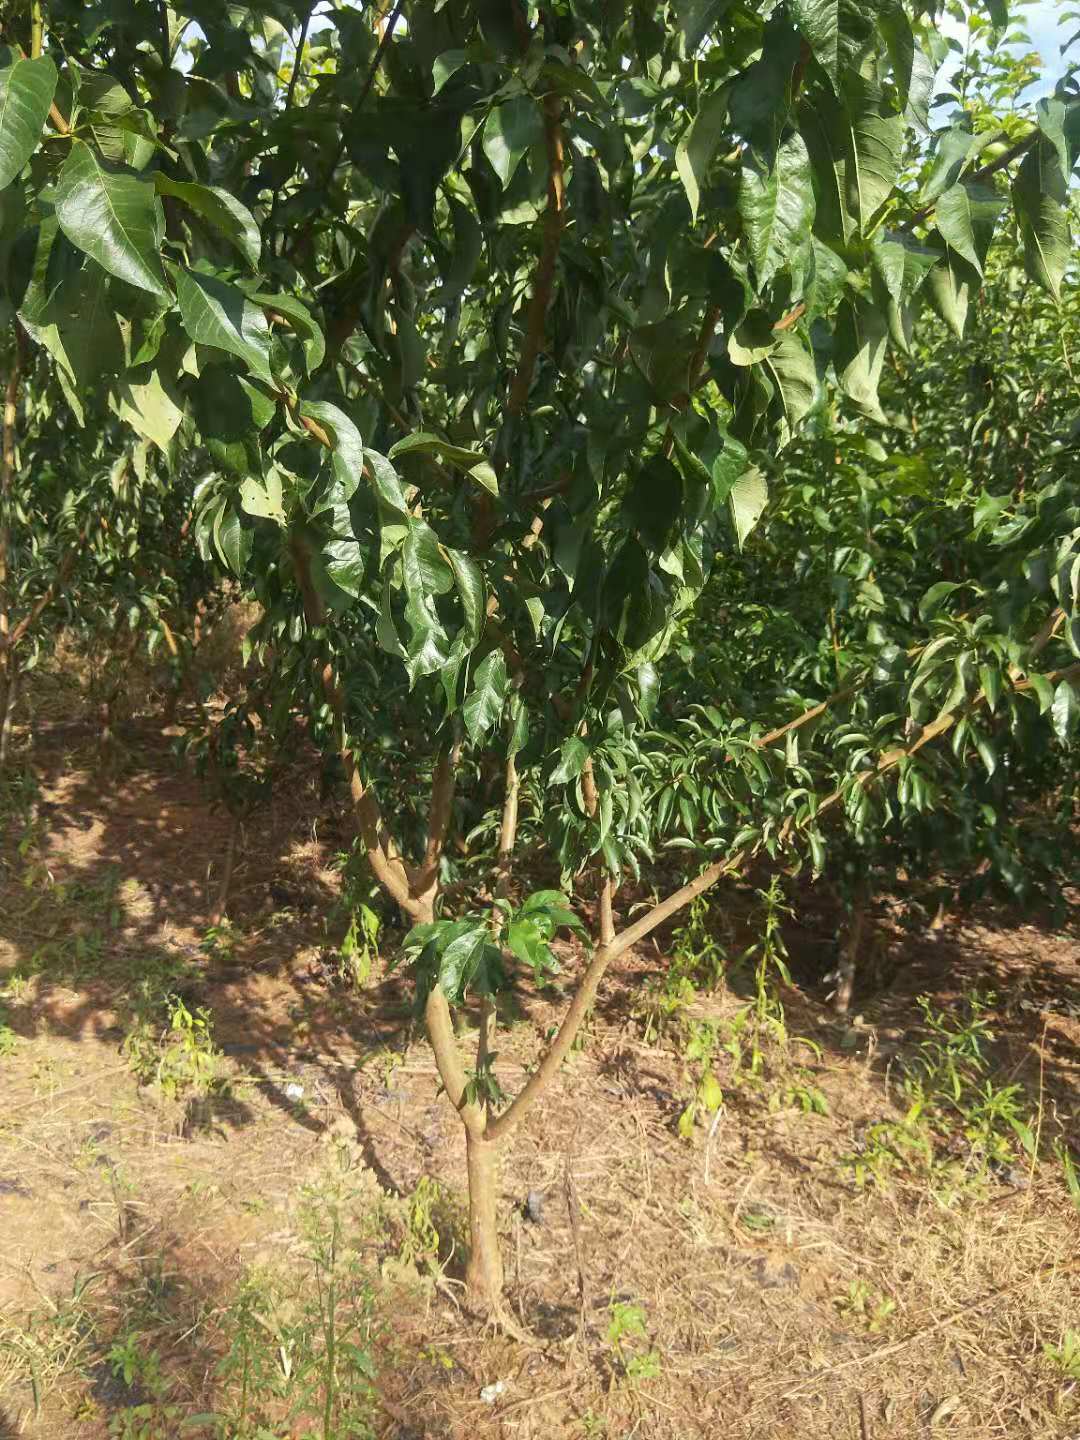 2,矮化李子树结果期修剪 栽植2—3年的李子,整形